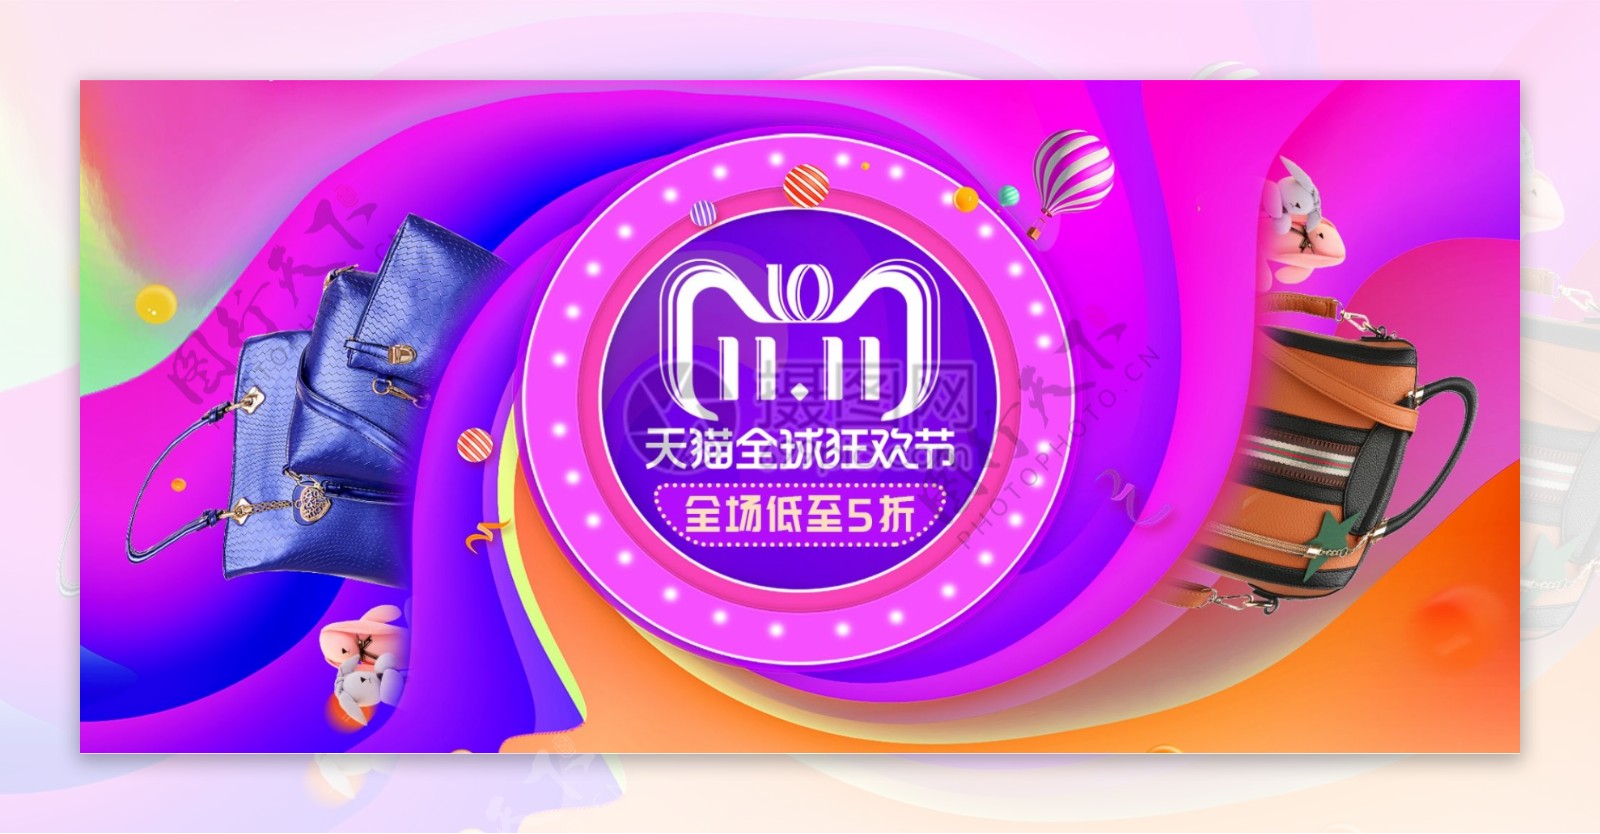 双11狂欢节女包促销淘宝banner